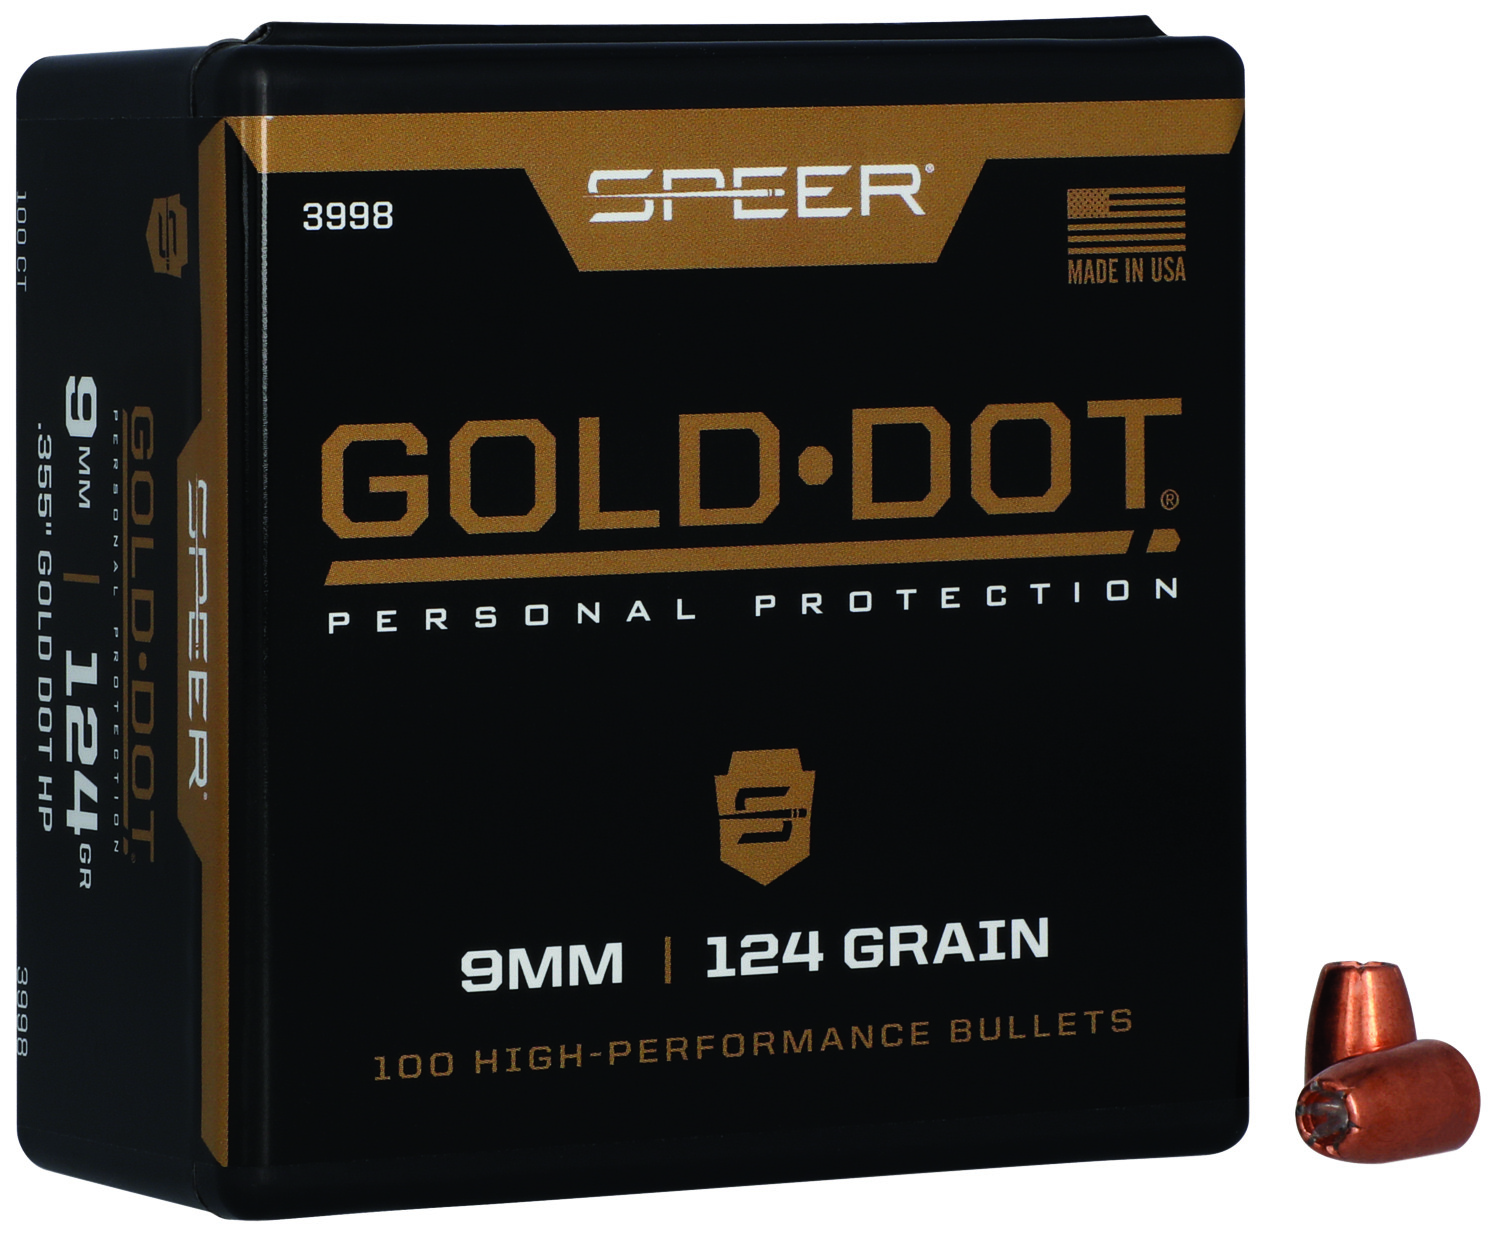 Speer gold dot 45 230 grain penetration